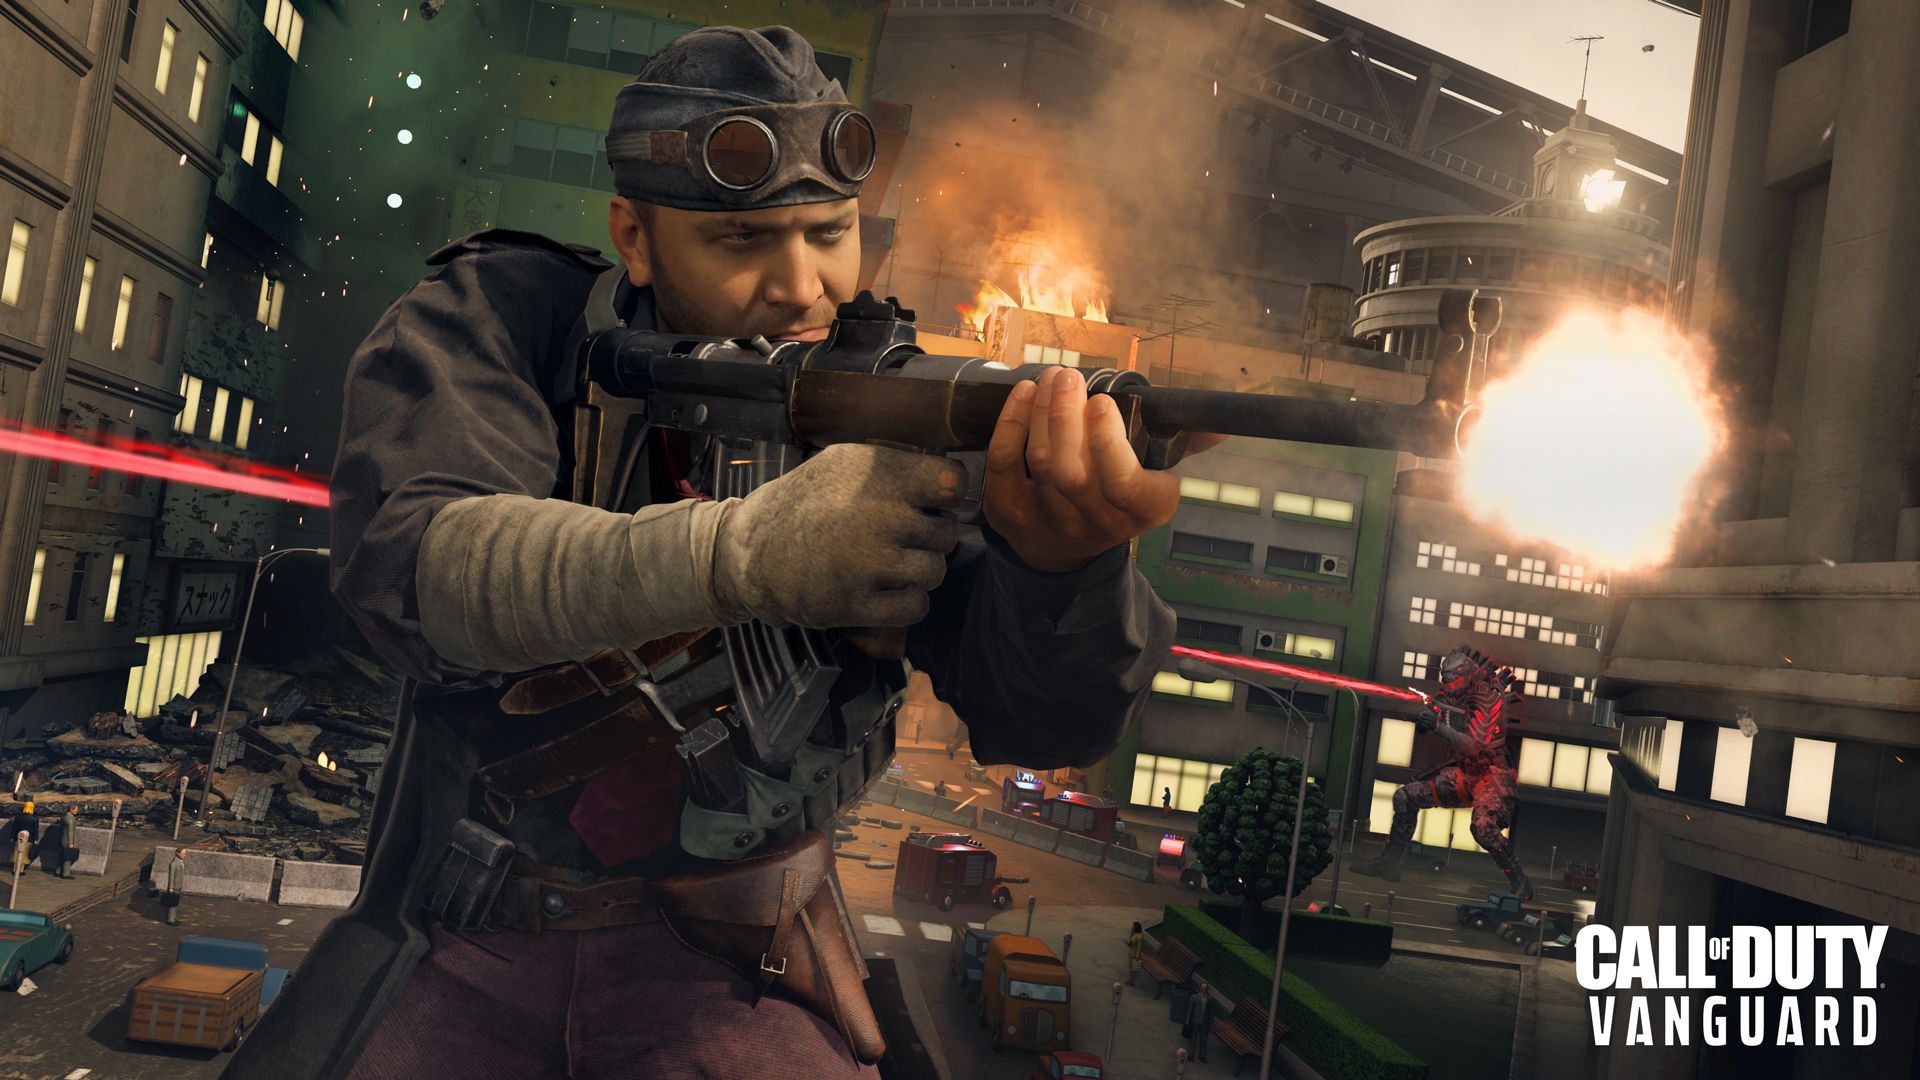 Call of Duty: Vanguard  Requisitos para jogar no PC - Canaltech